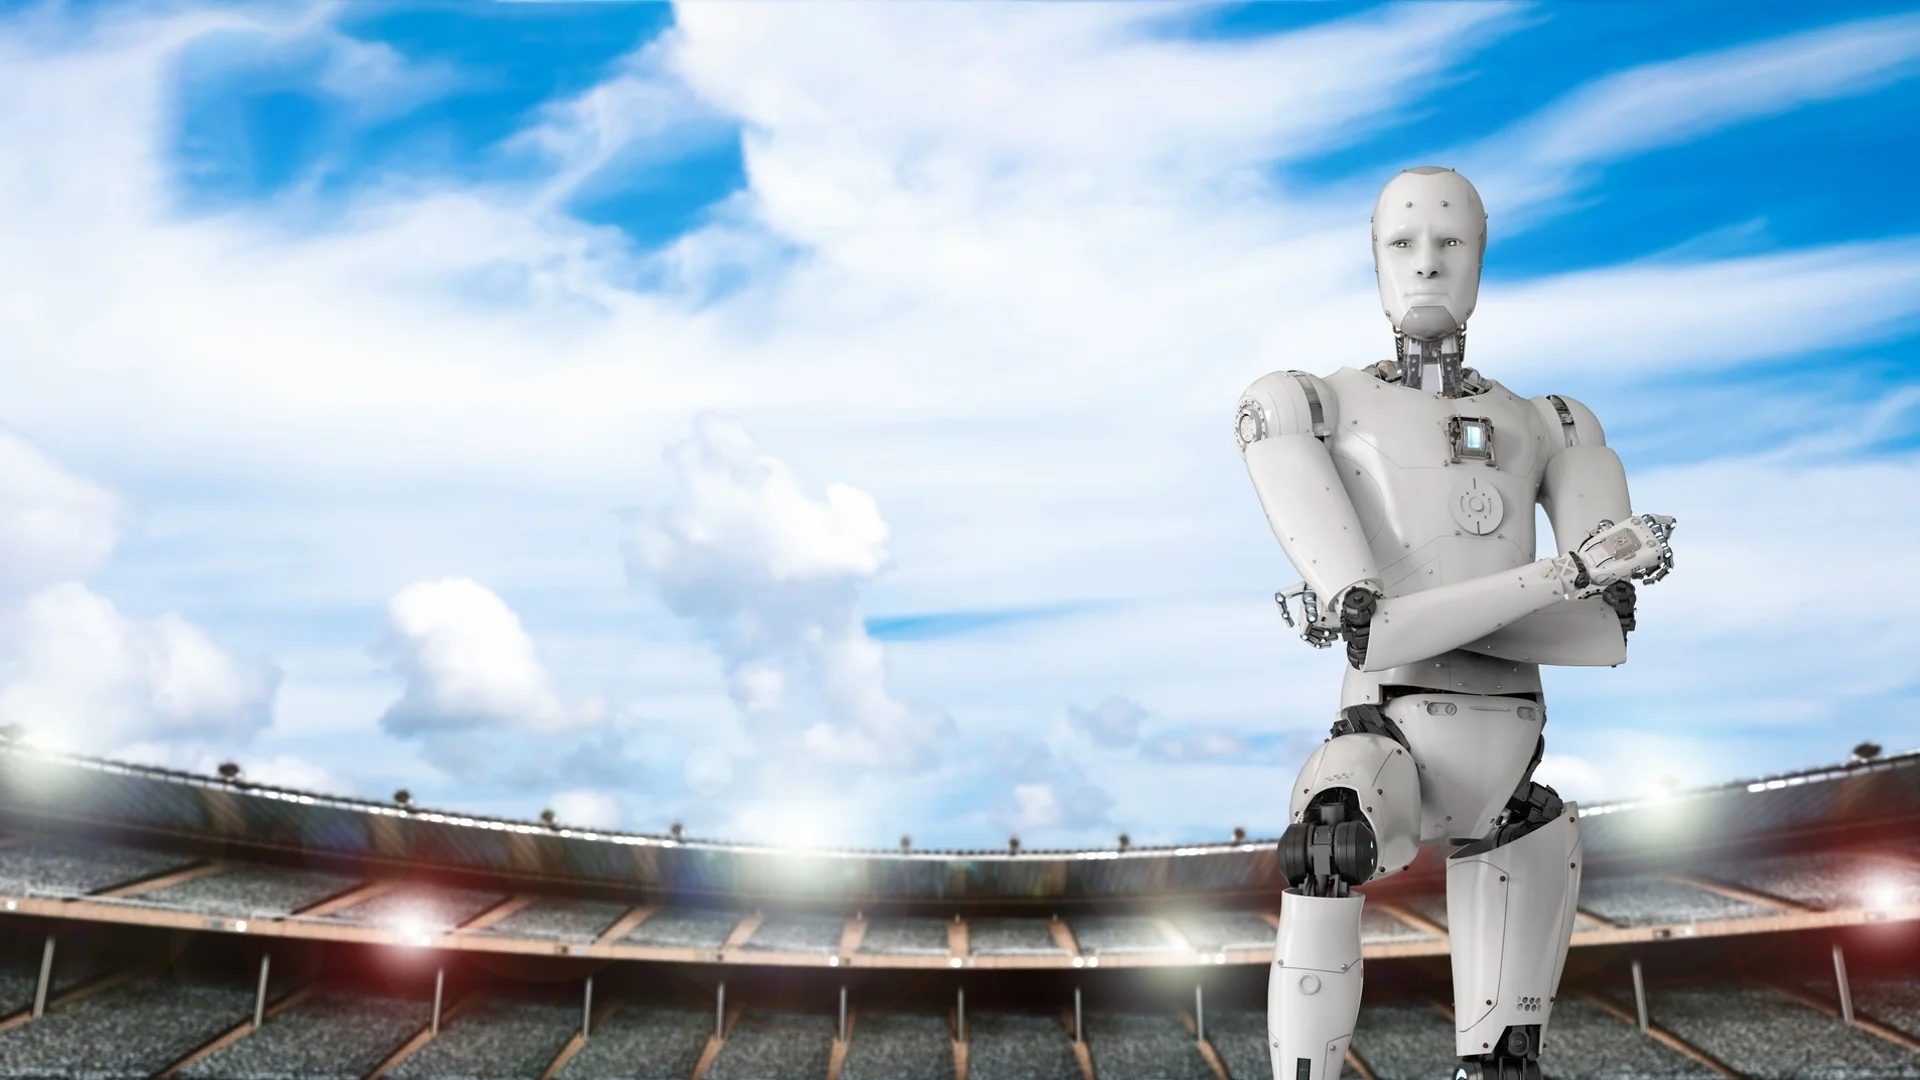 AI технолигиите навлизат в националния отбор на Англия